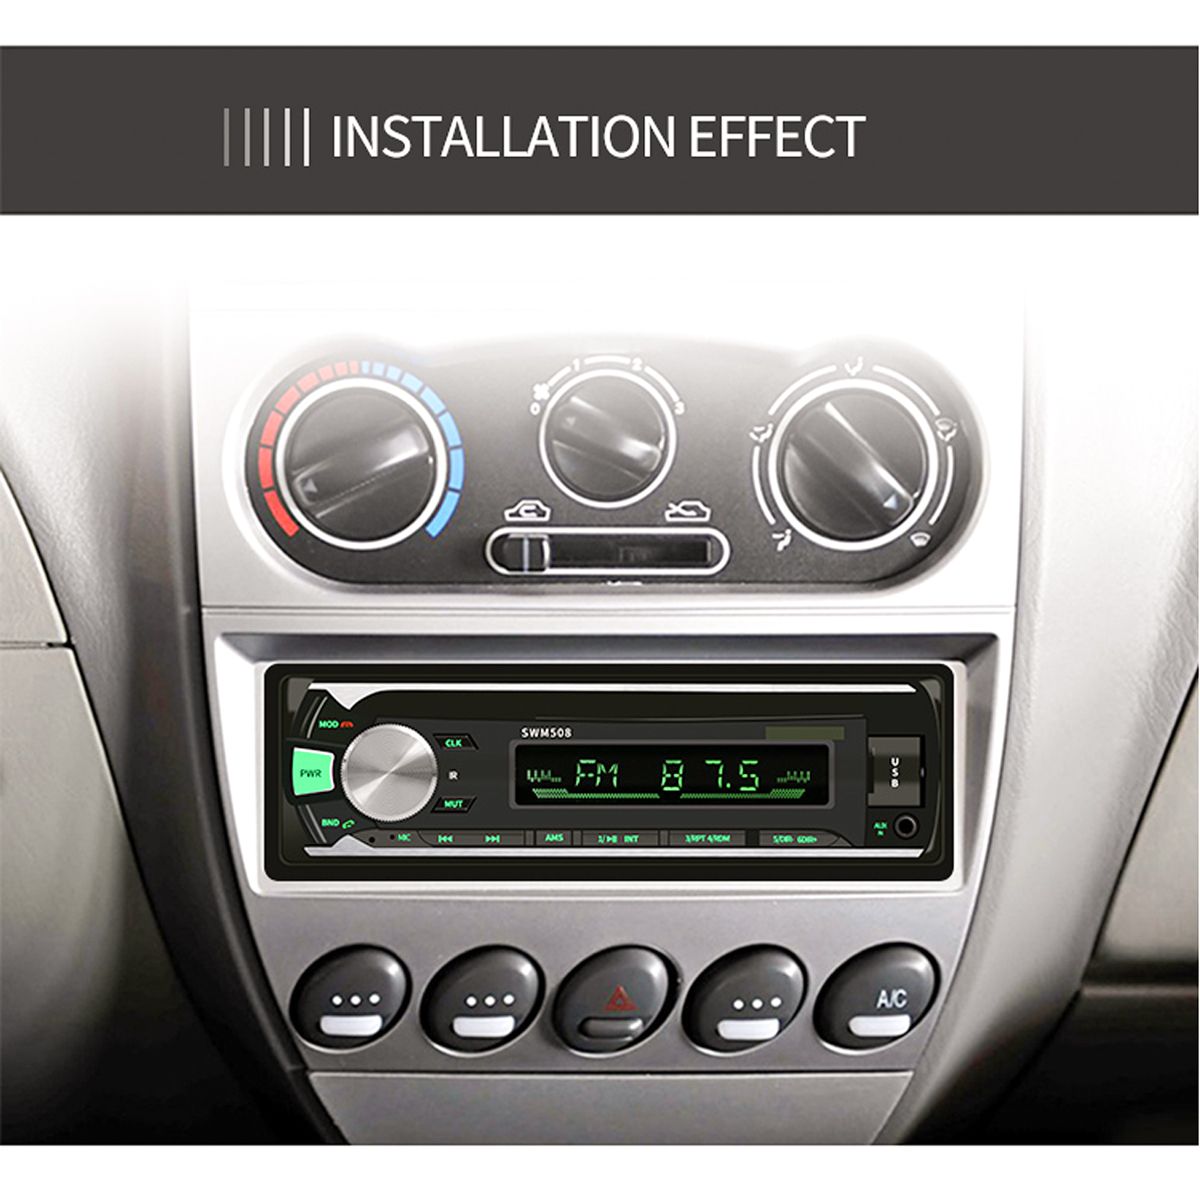 508-1-Din-bluetooth-Car-Audio-MP3-Player-FM-Radio-USB-SD-AUX-In-Dash-Autoradio-with-Remote-Control-1574597